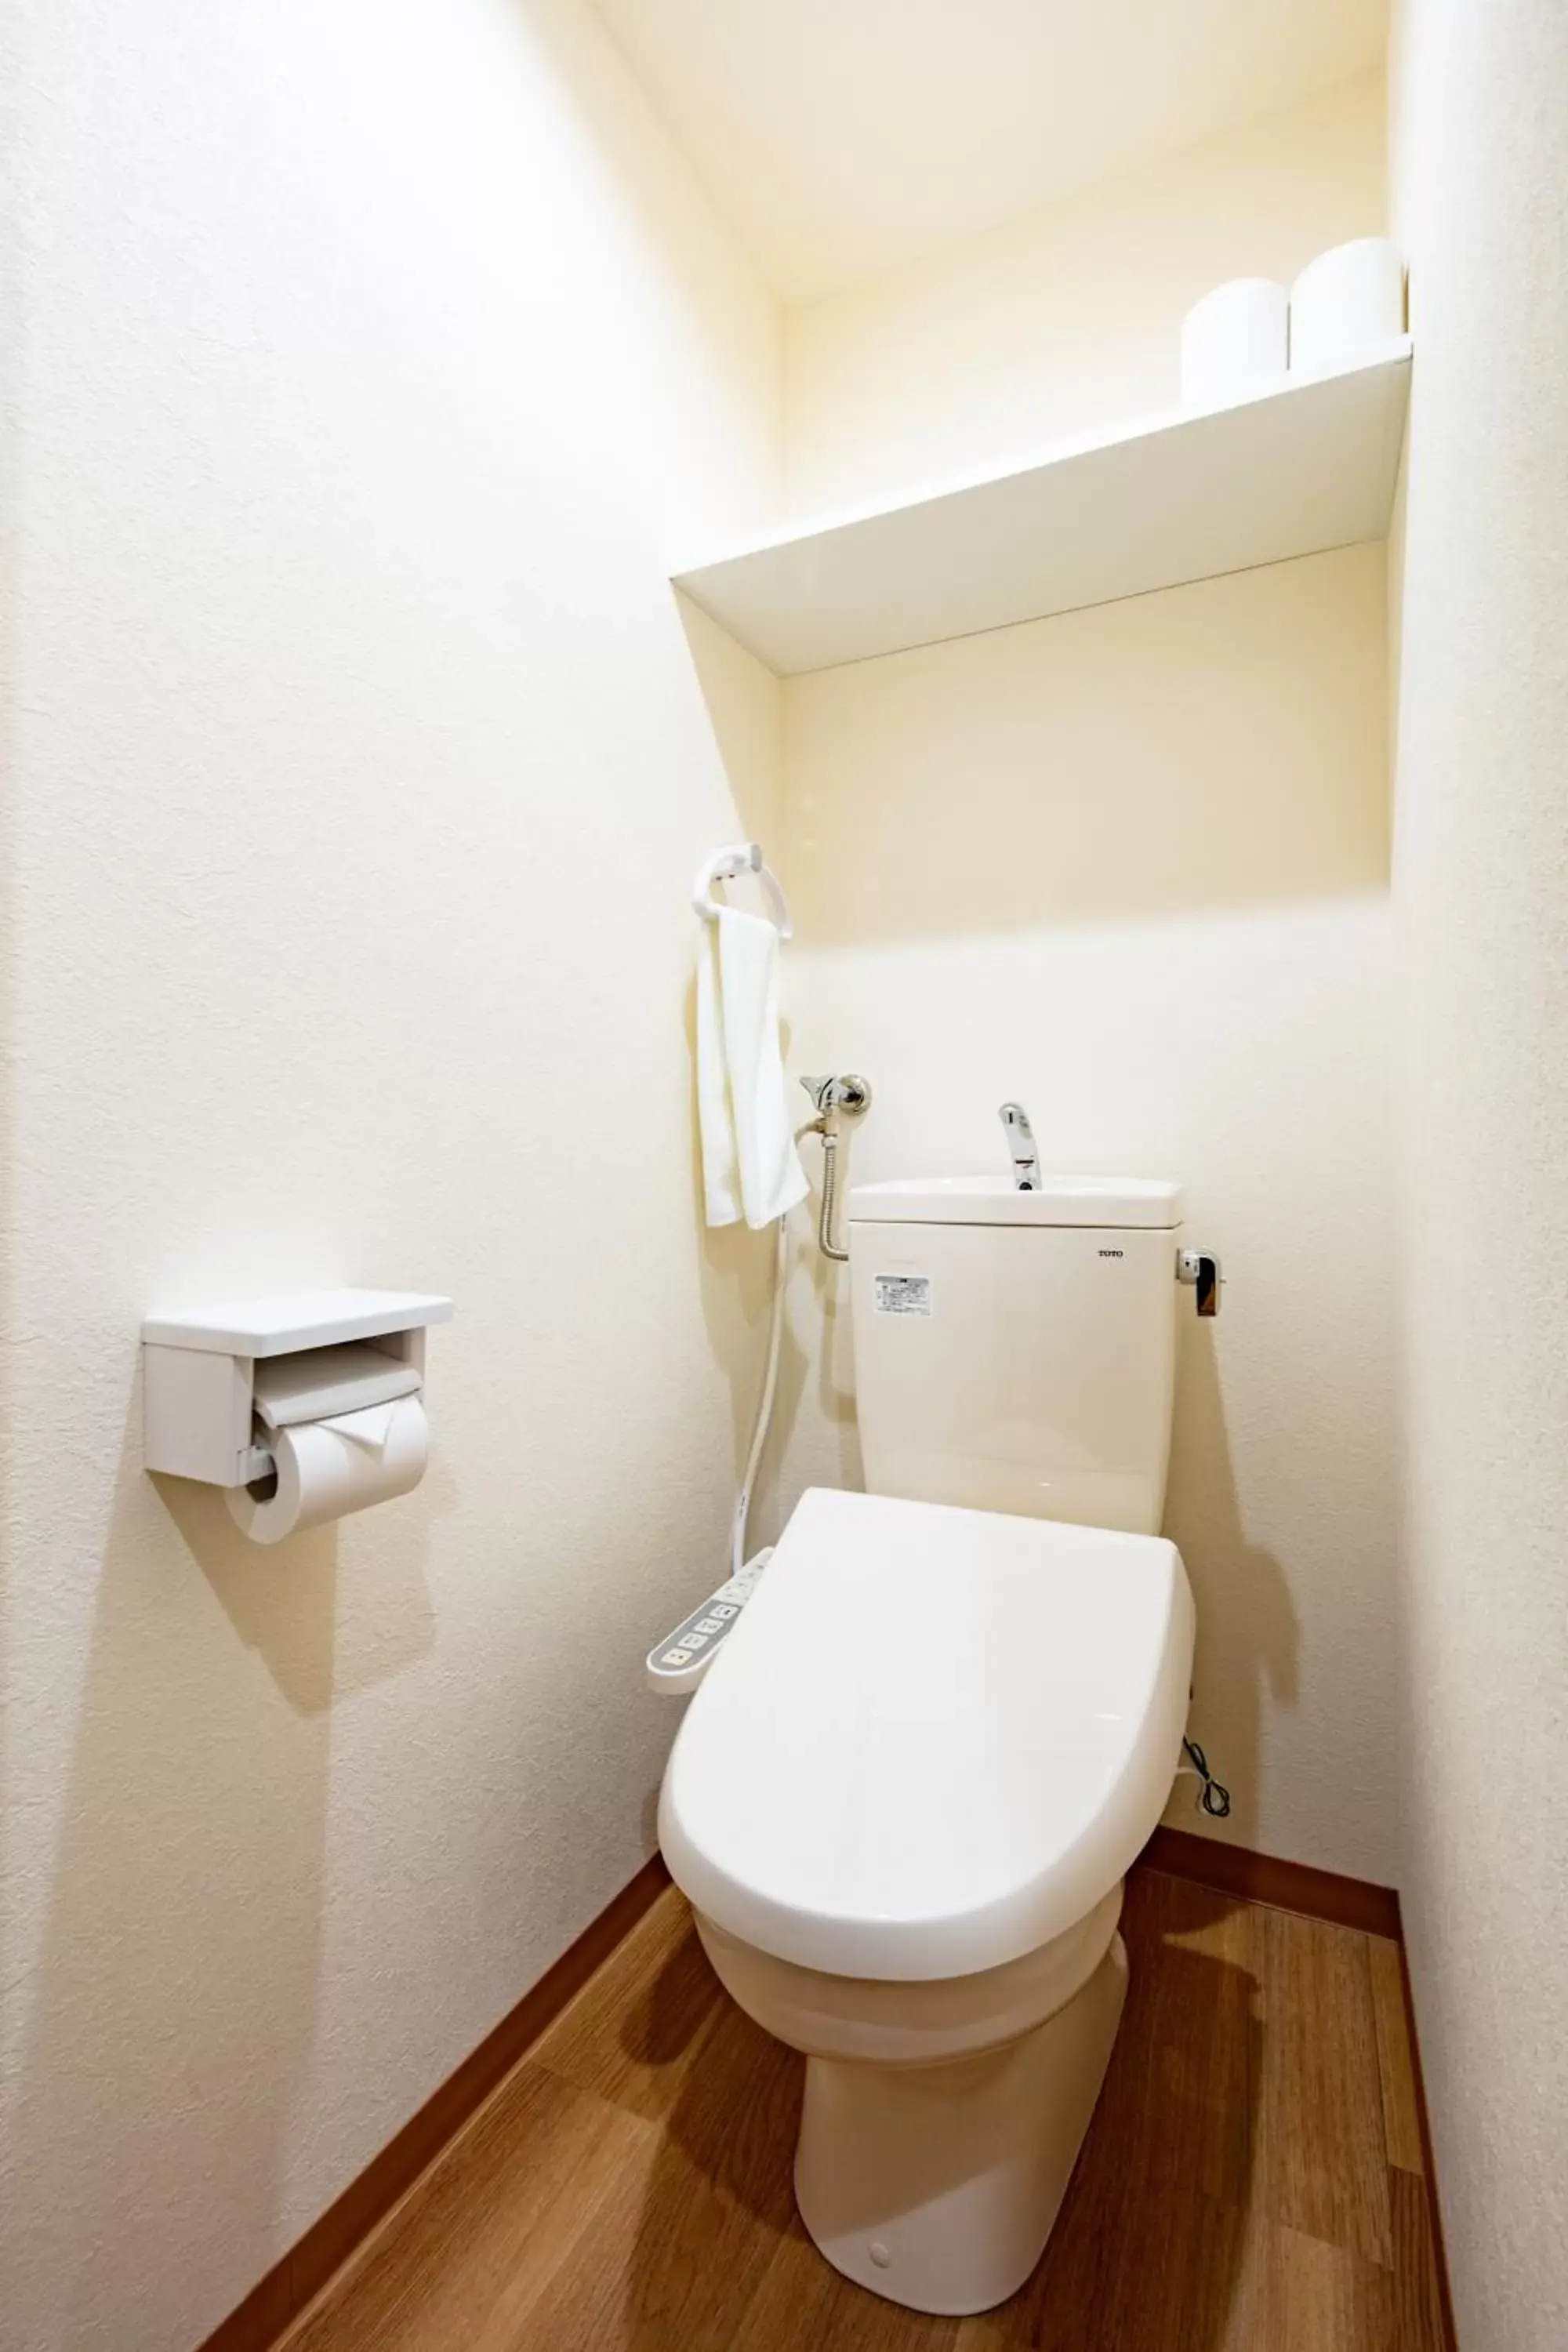 Toilet, Bathroom in VILLA KOSHIDO kotoni